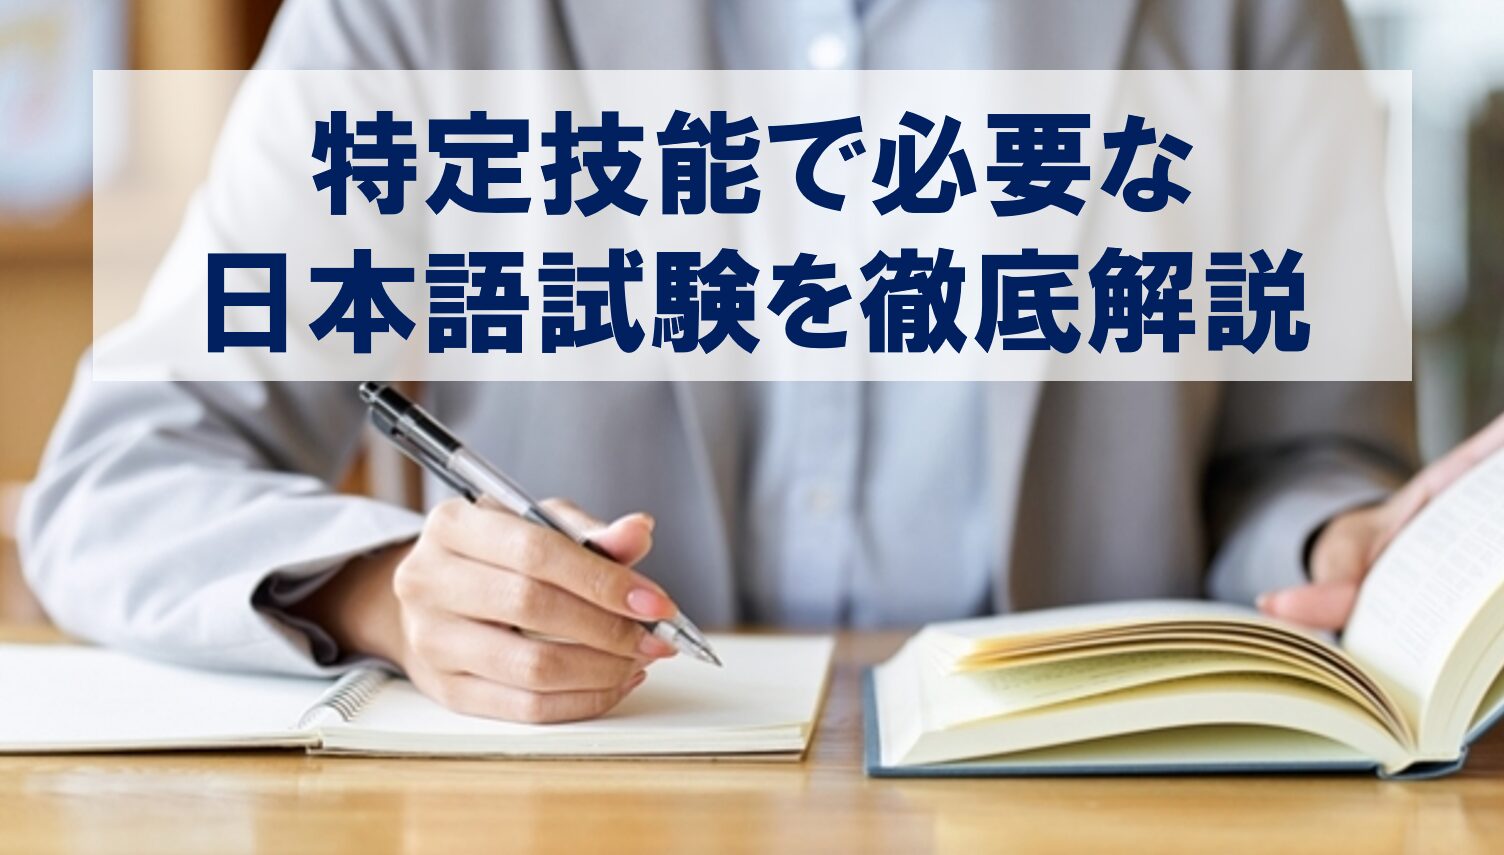 試験勉強をしている受験生を背景に日本語試験の解説タイトルを提示